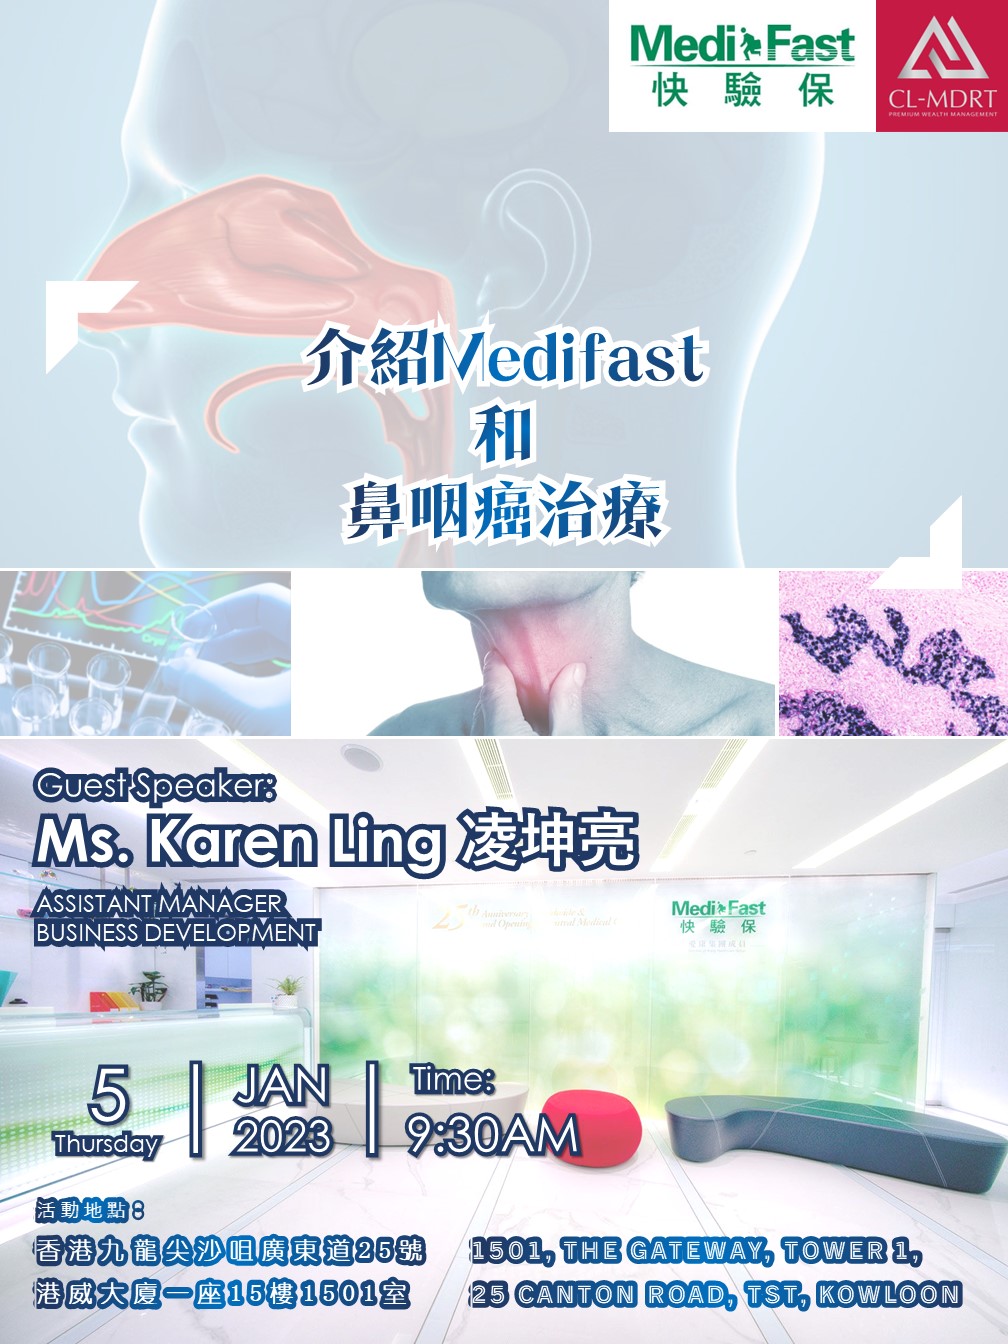 介紹Medifast和鼻咽癌治療